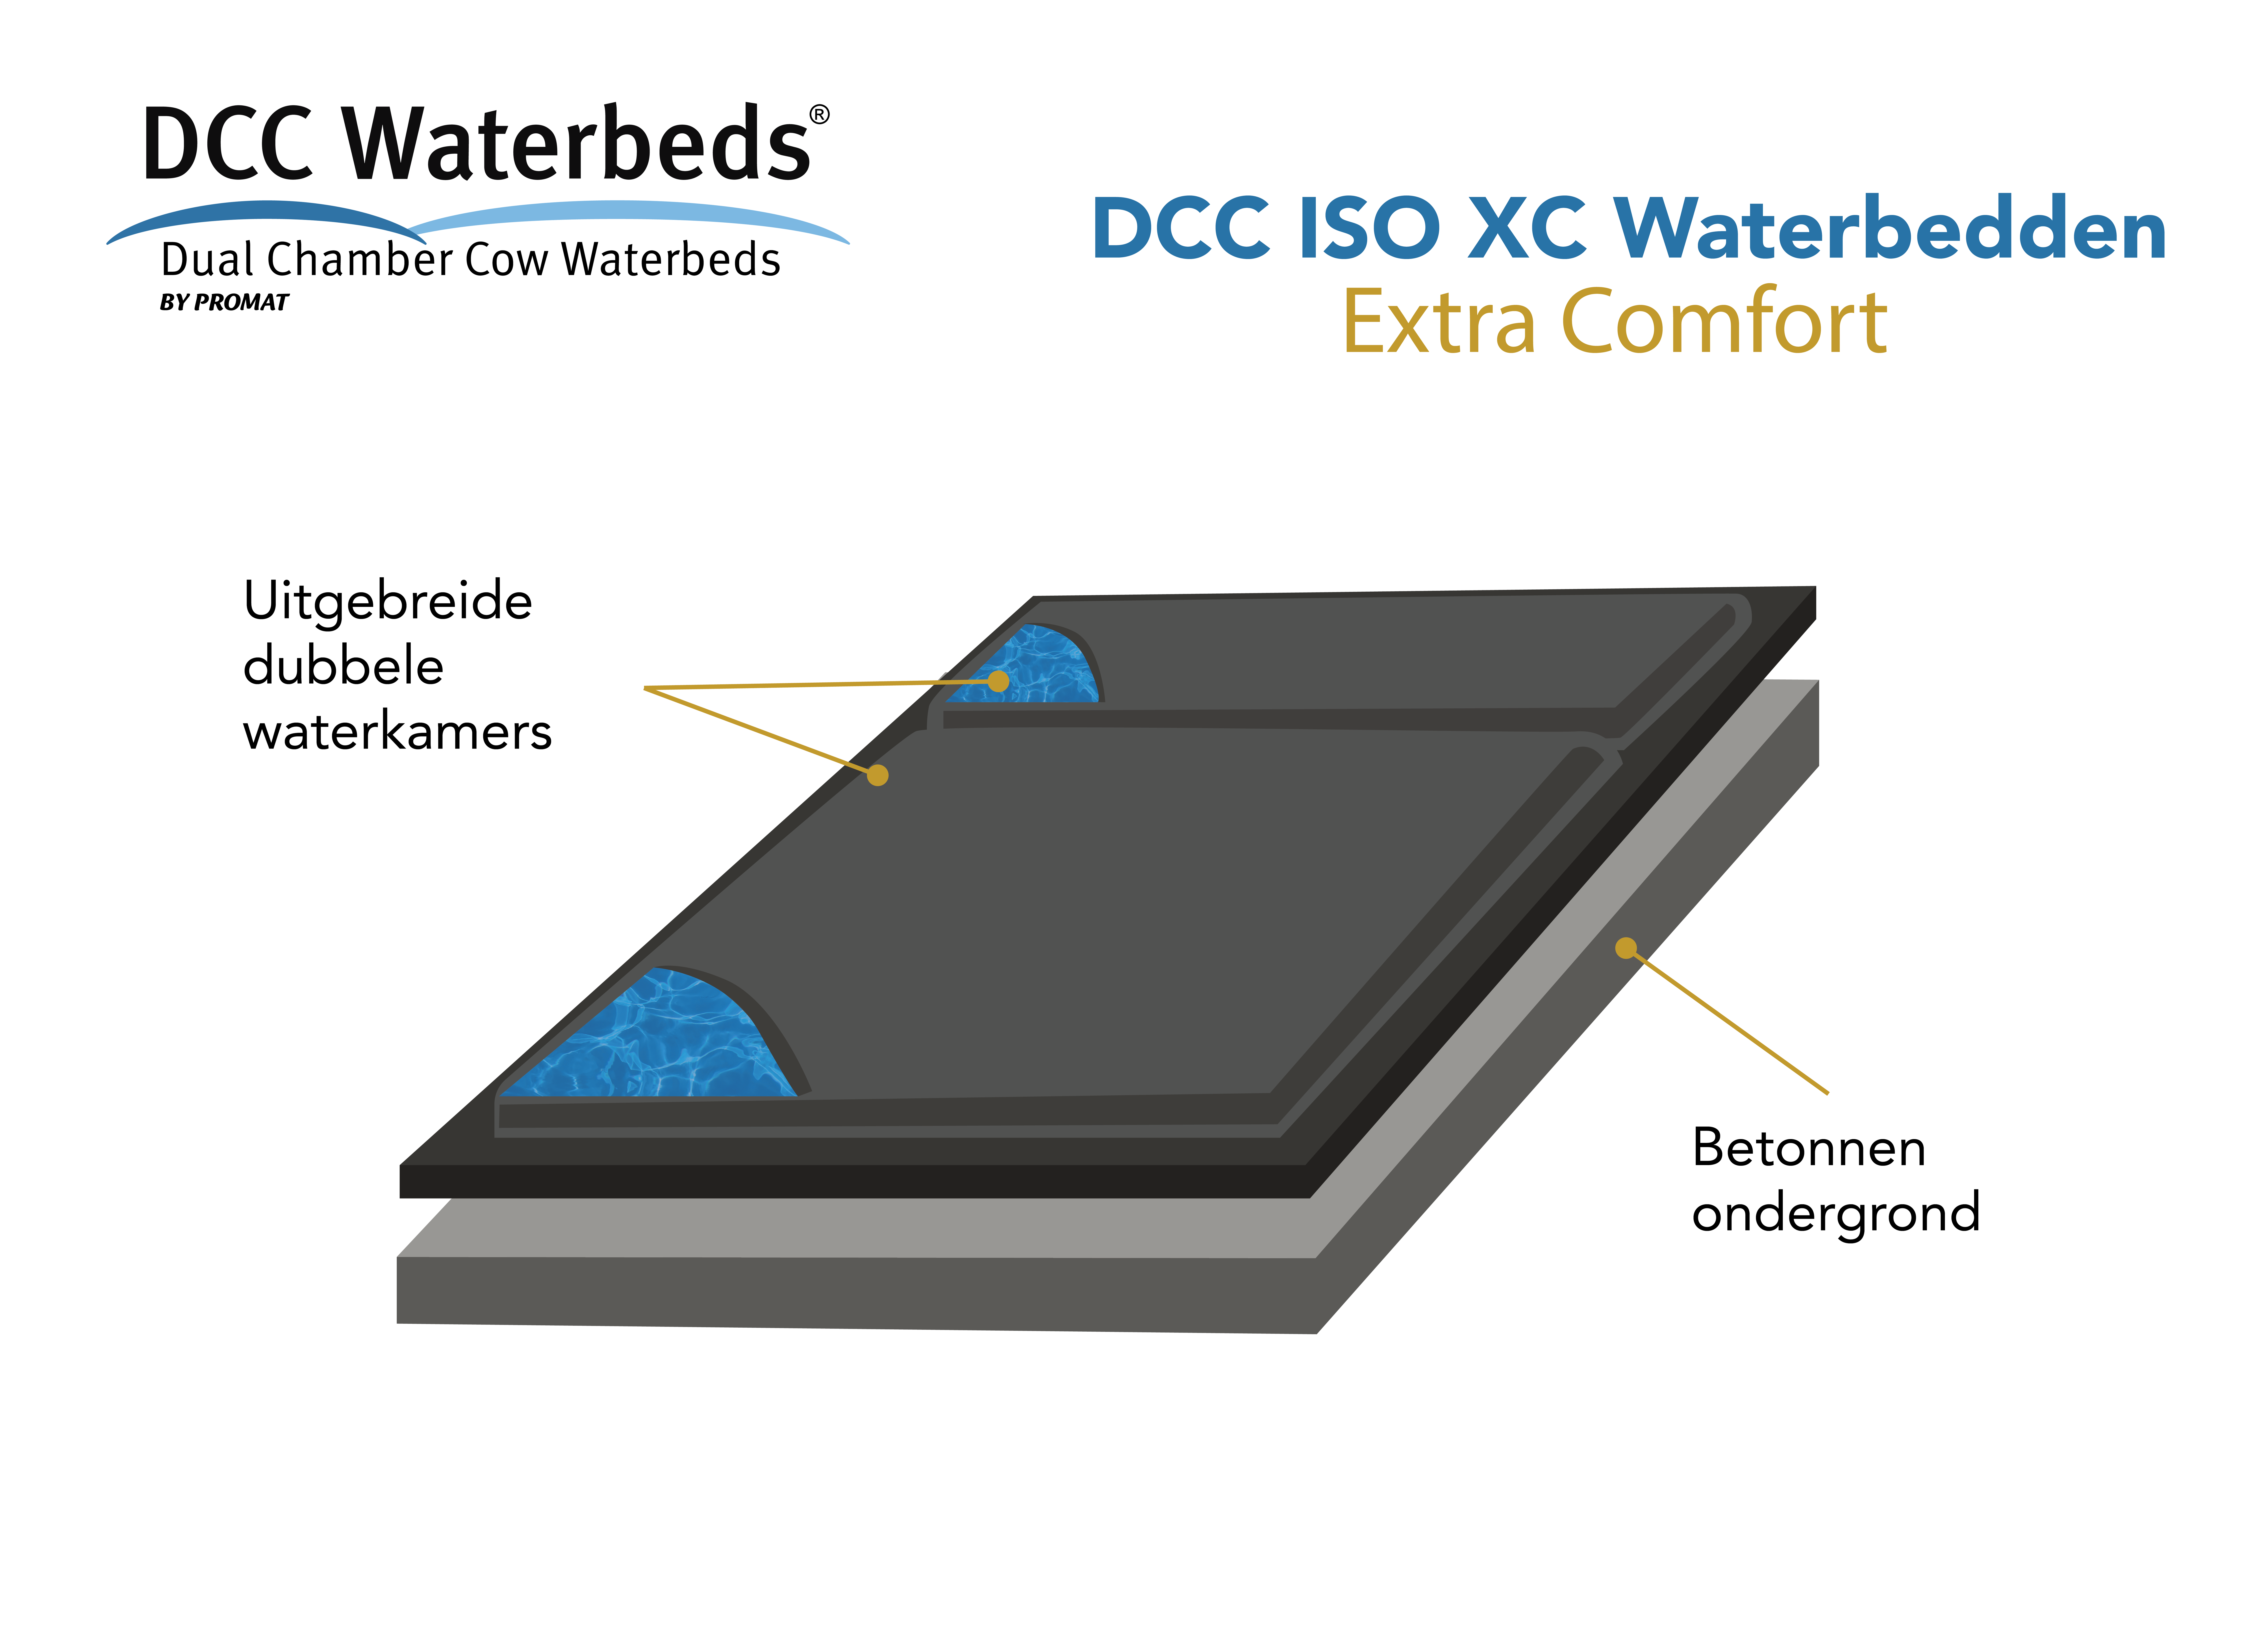 DCC ISO XC Waterbedden